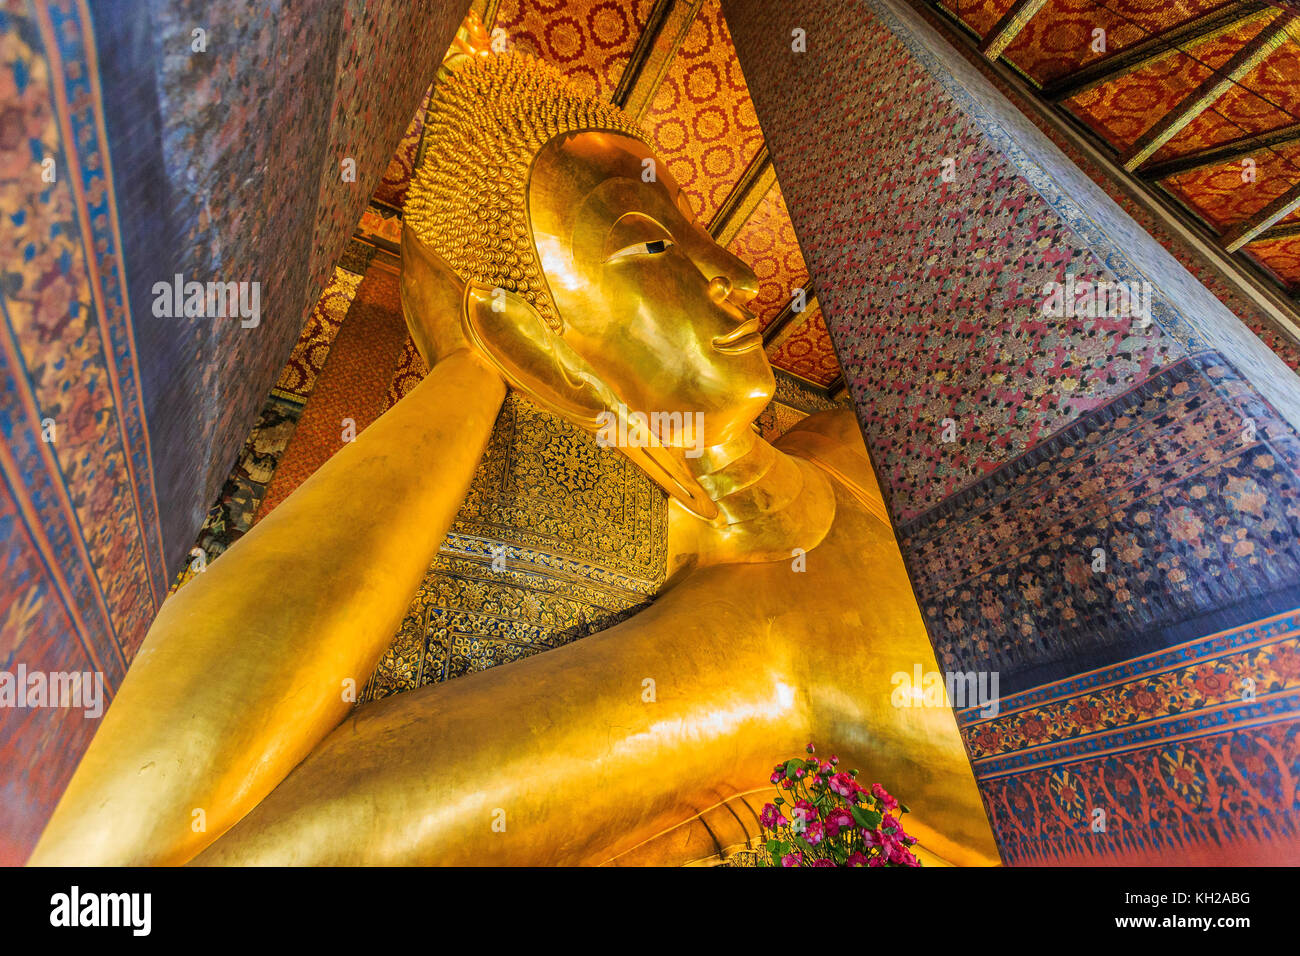 Bangkok, Thailand. Reclining Buddha, gold statue at Wat Pho temple. Stock Photo